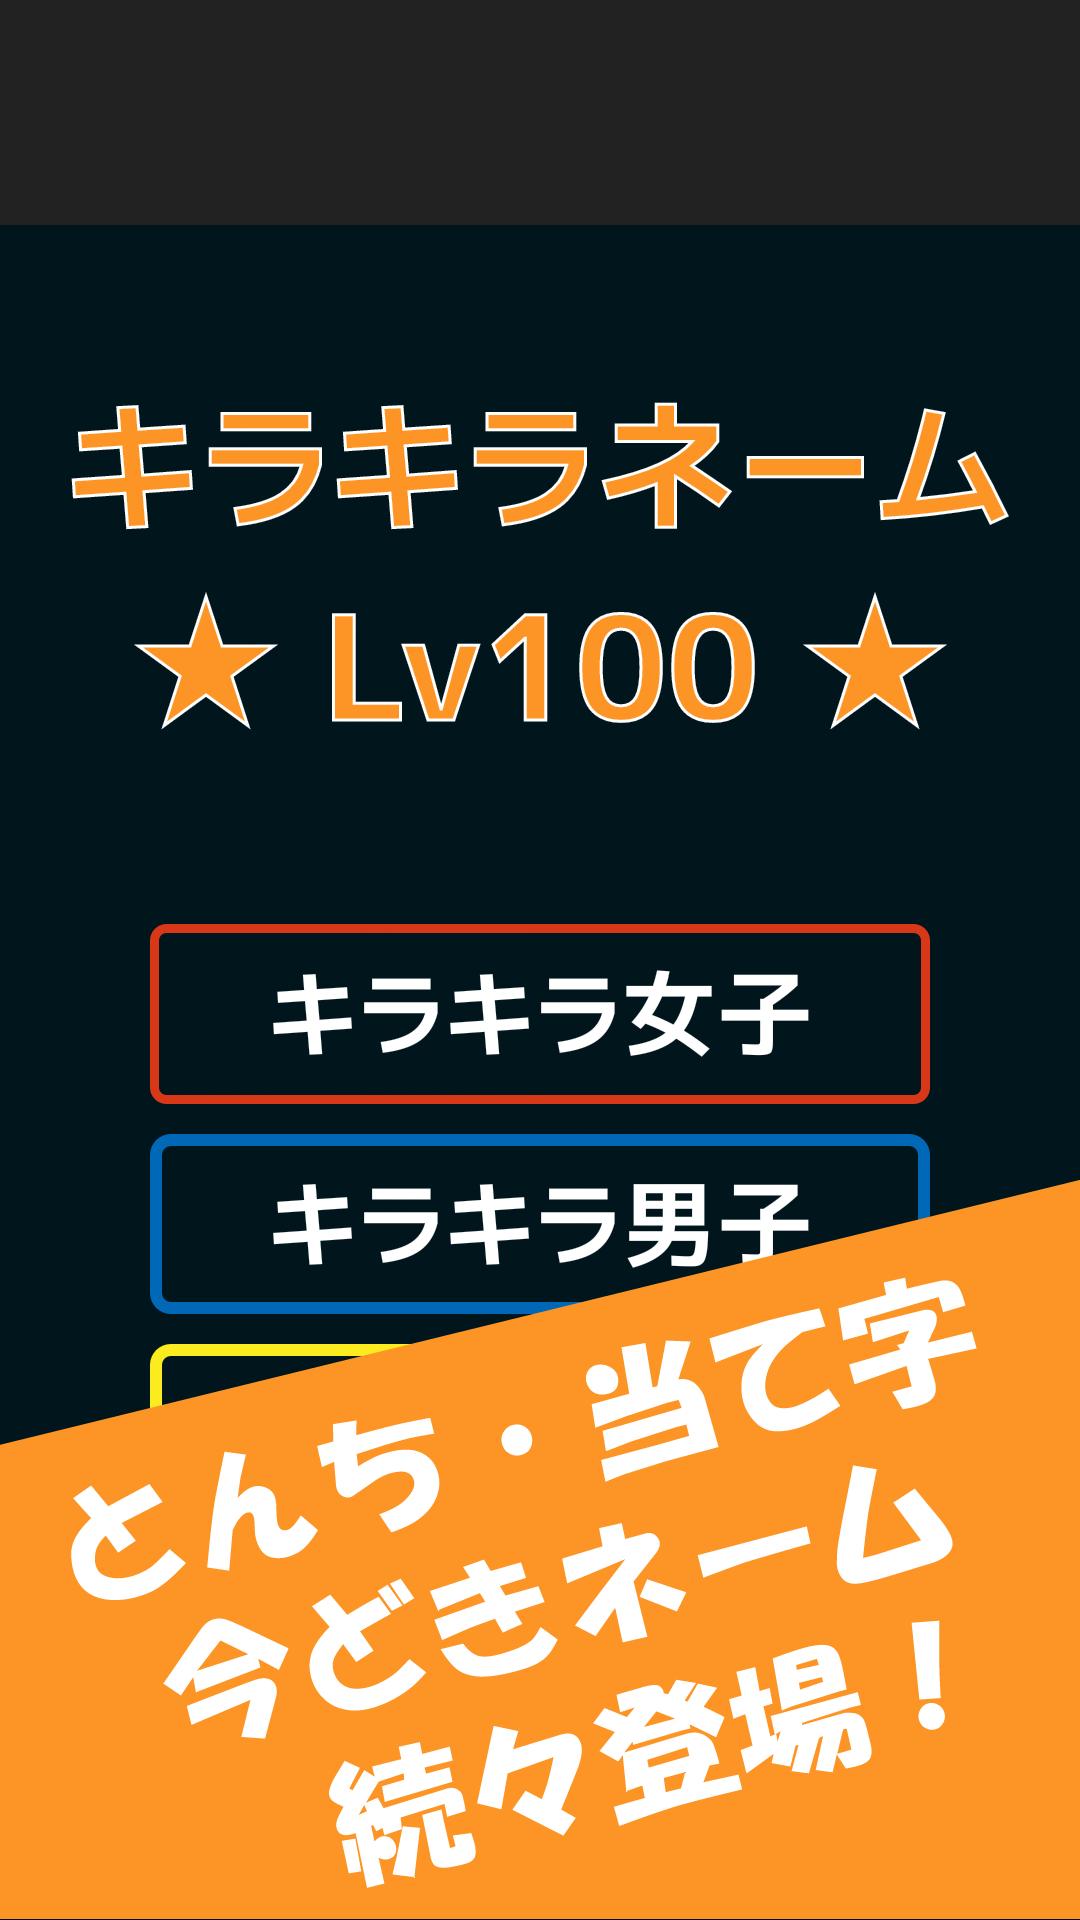 キラキラネームlv100 For Android Apk Download